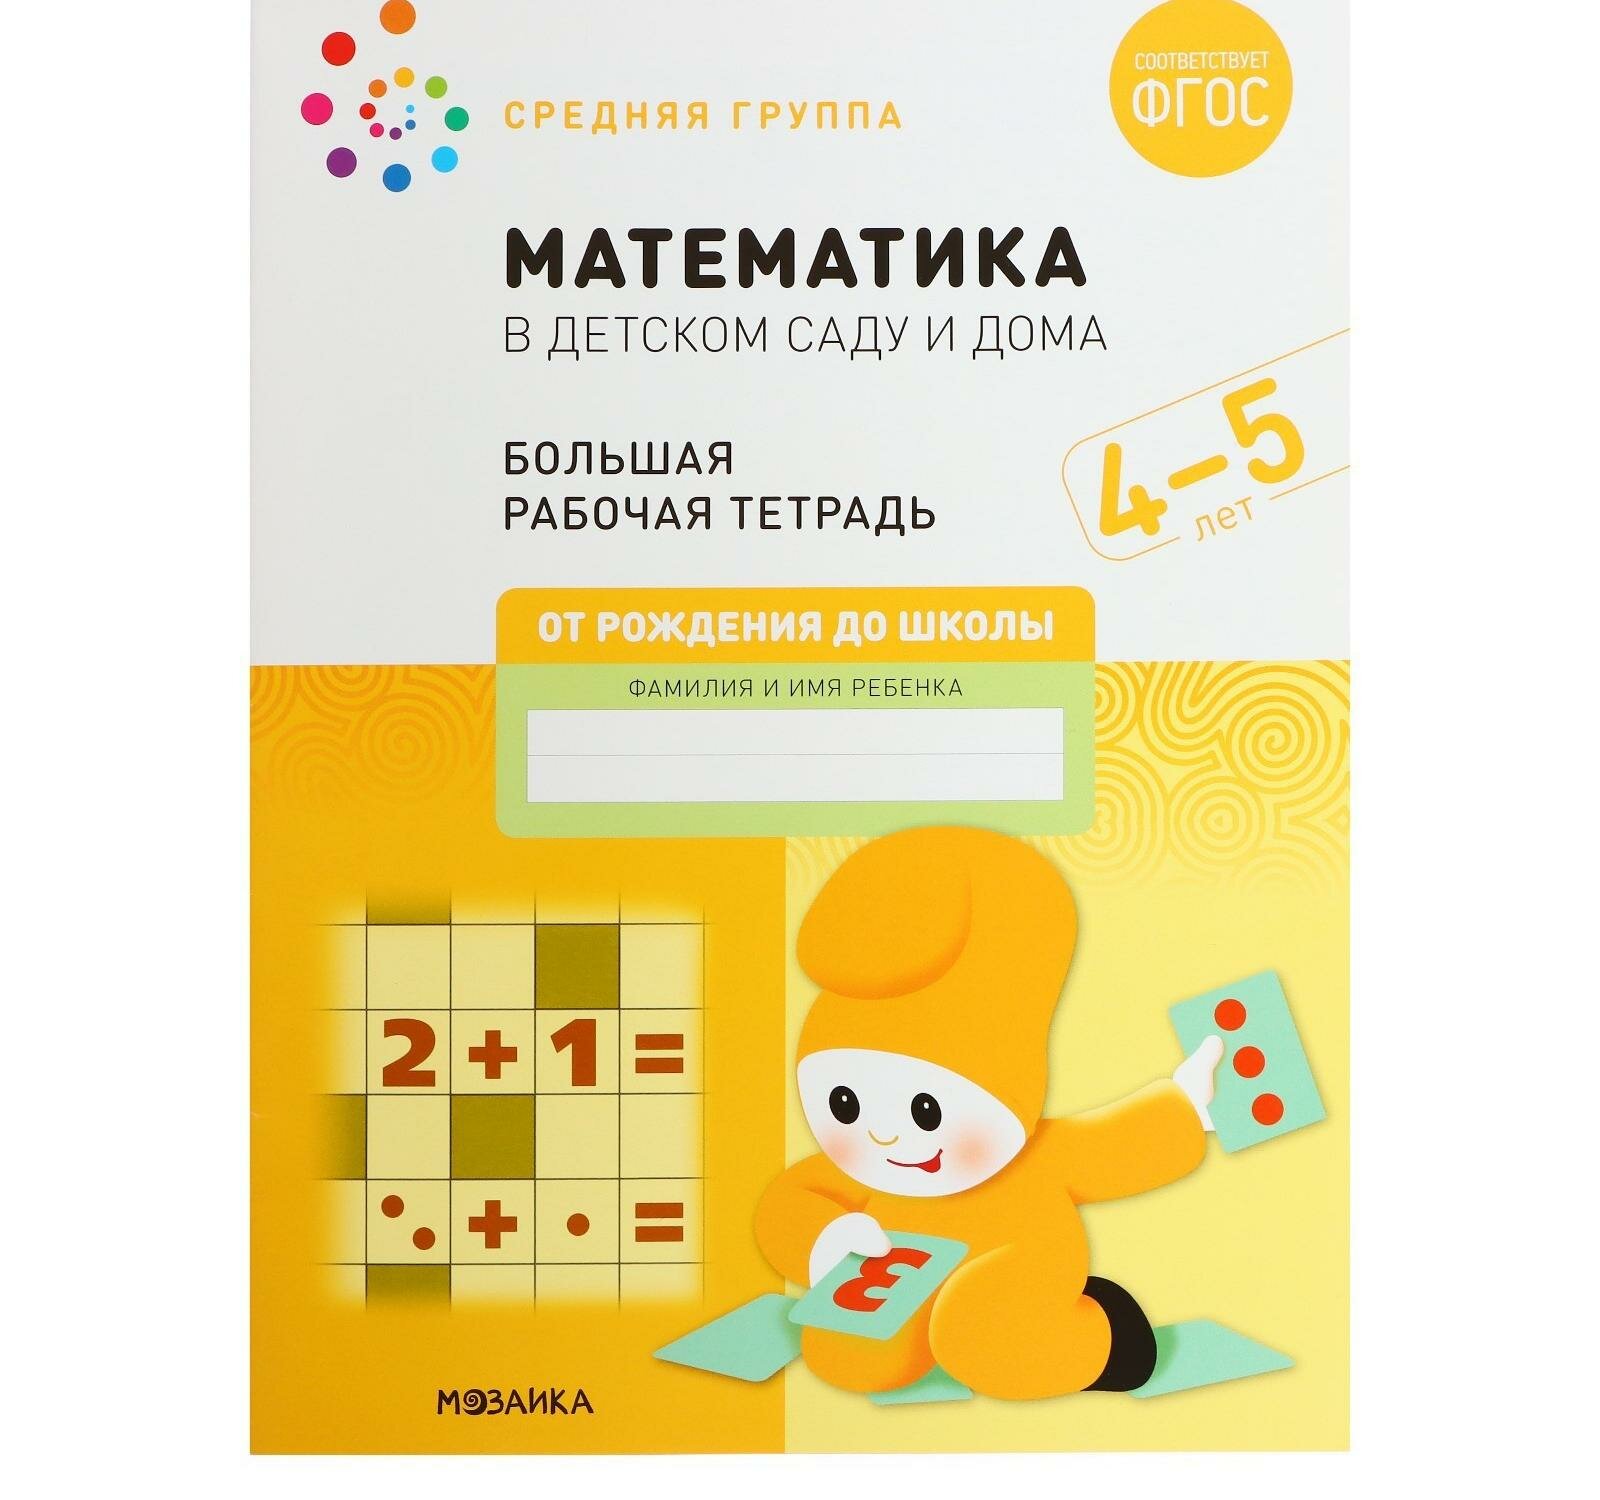 Рабочая тетрадь "Математика в детском саду", 4-5 лет, ФГОС